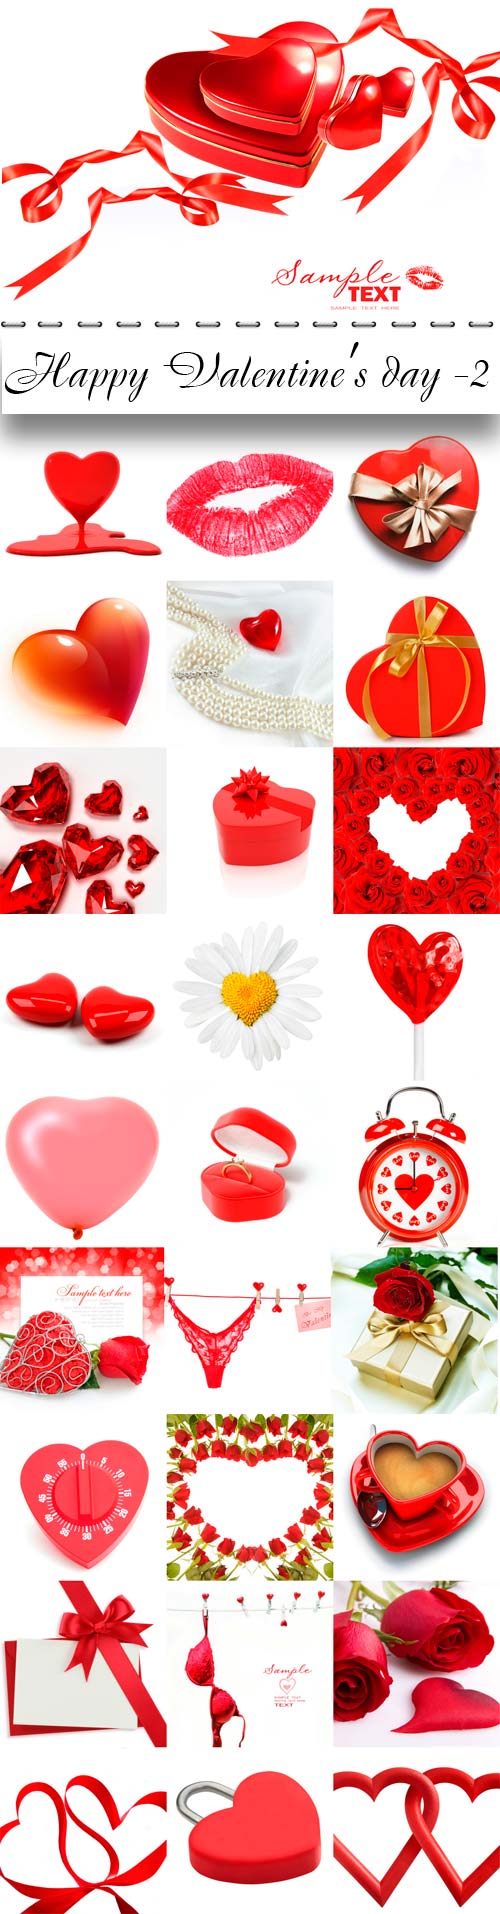 Happy Valentine's day raster graphics - 2